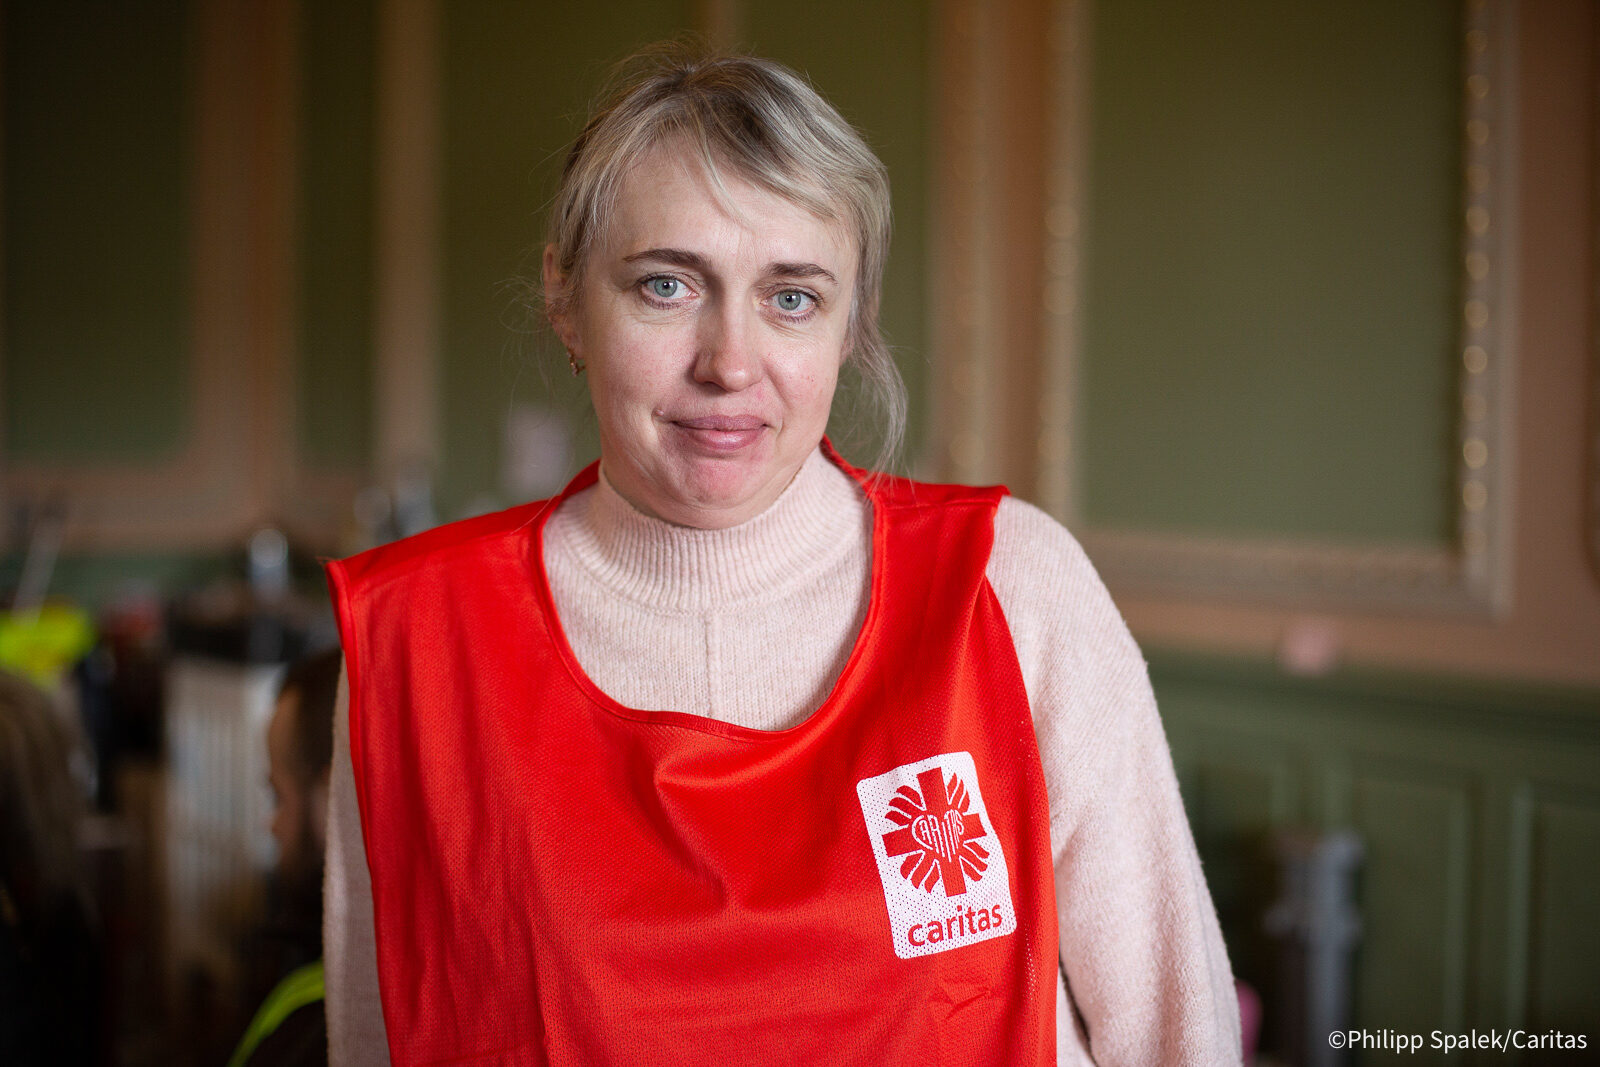 La refugiada Khalina Stoyanowka trabaja como voluntaria de Caritas ayudando a otros refugiados en la frontera polaca